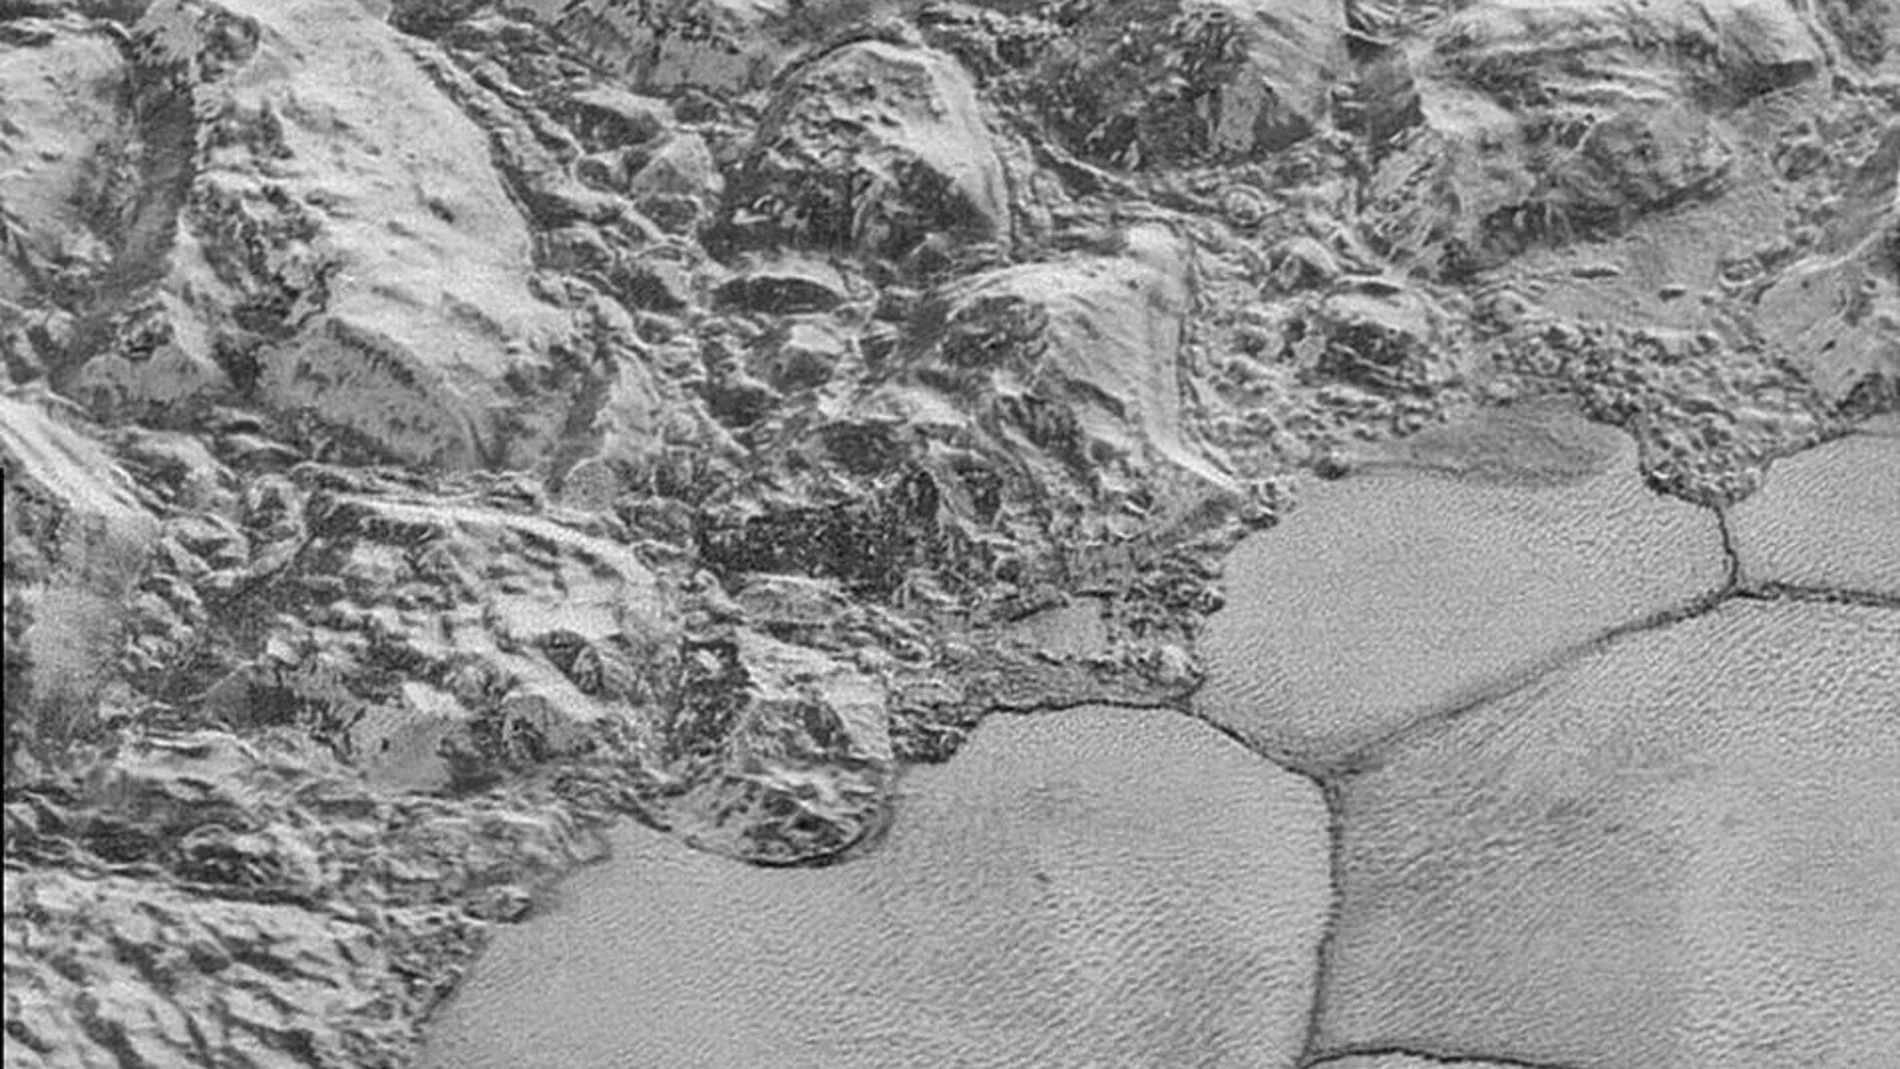 La NASA divulga las imágenes más nítidas jamás vistas de Plutón